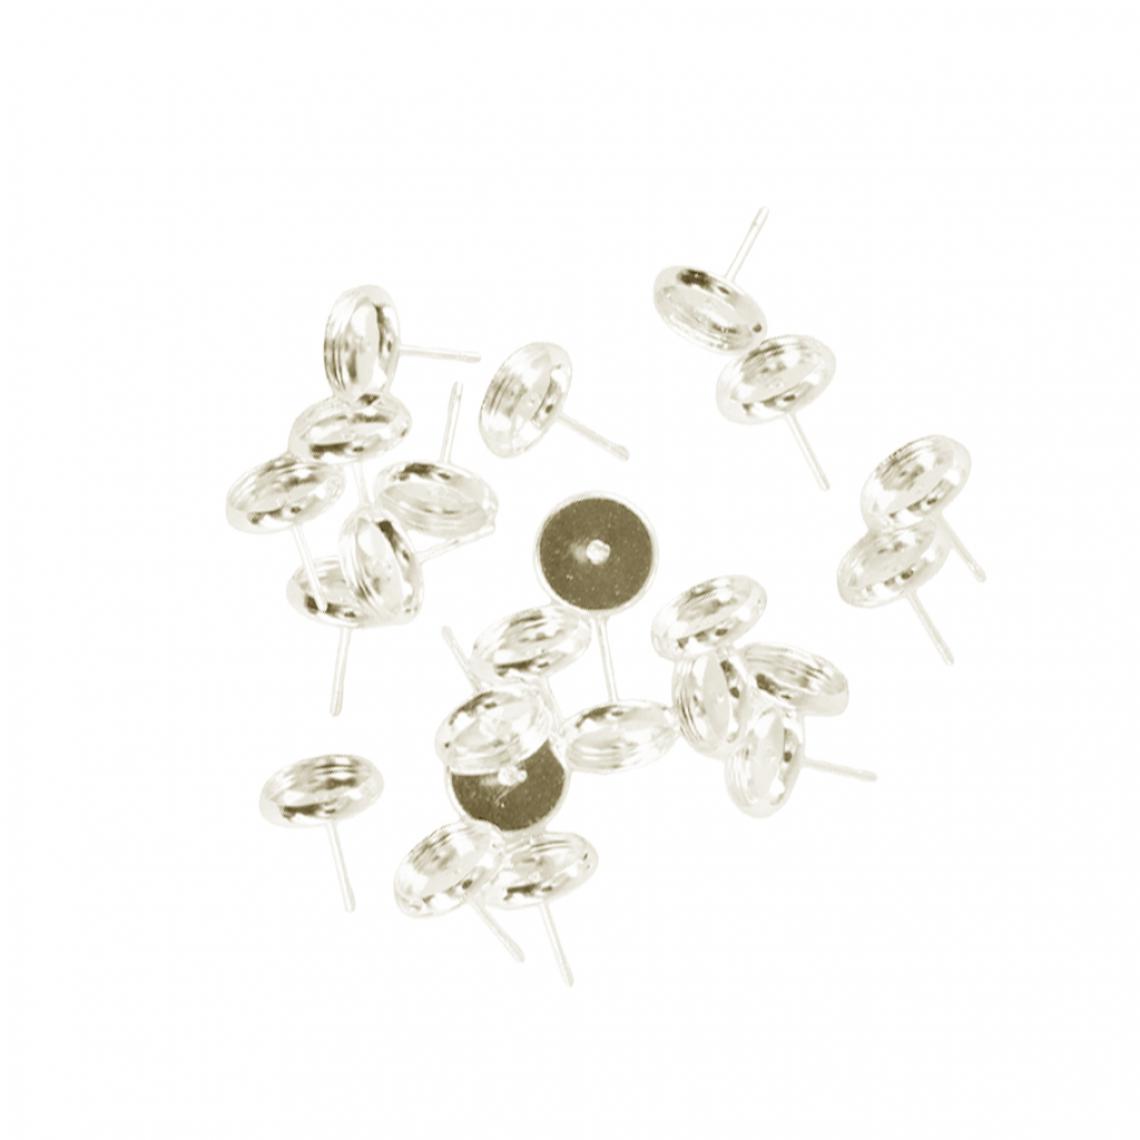 marque generique - 24 pièces vide 8mm boucle d'oreille plateau cabochon réglage bijoux bricolage argent blanc - Perles